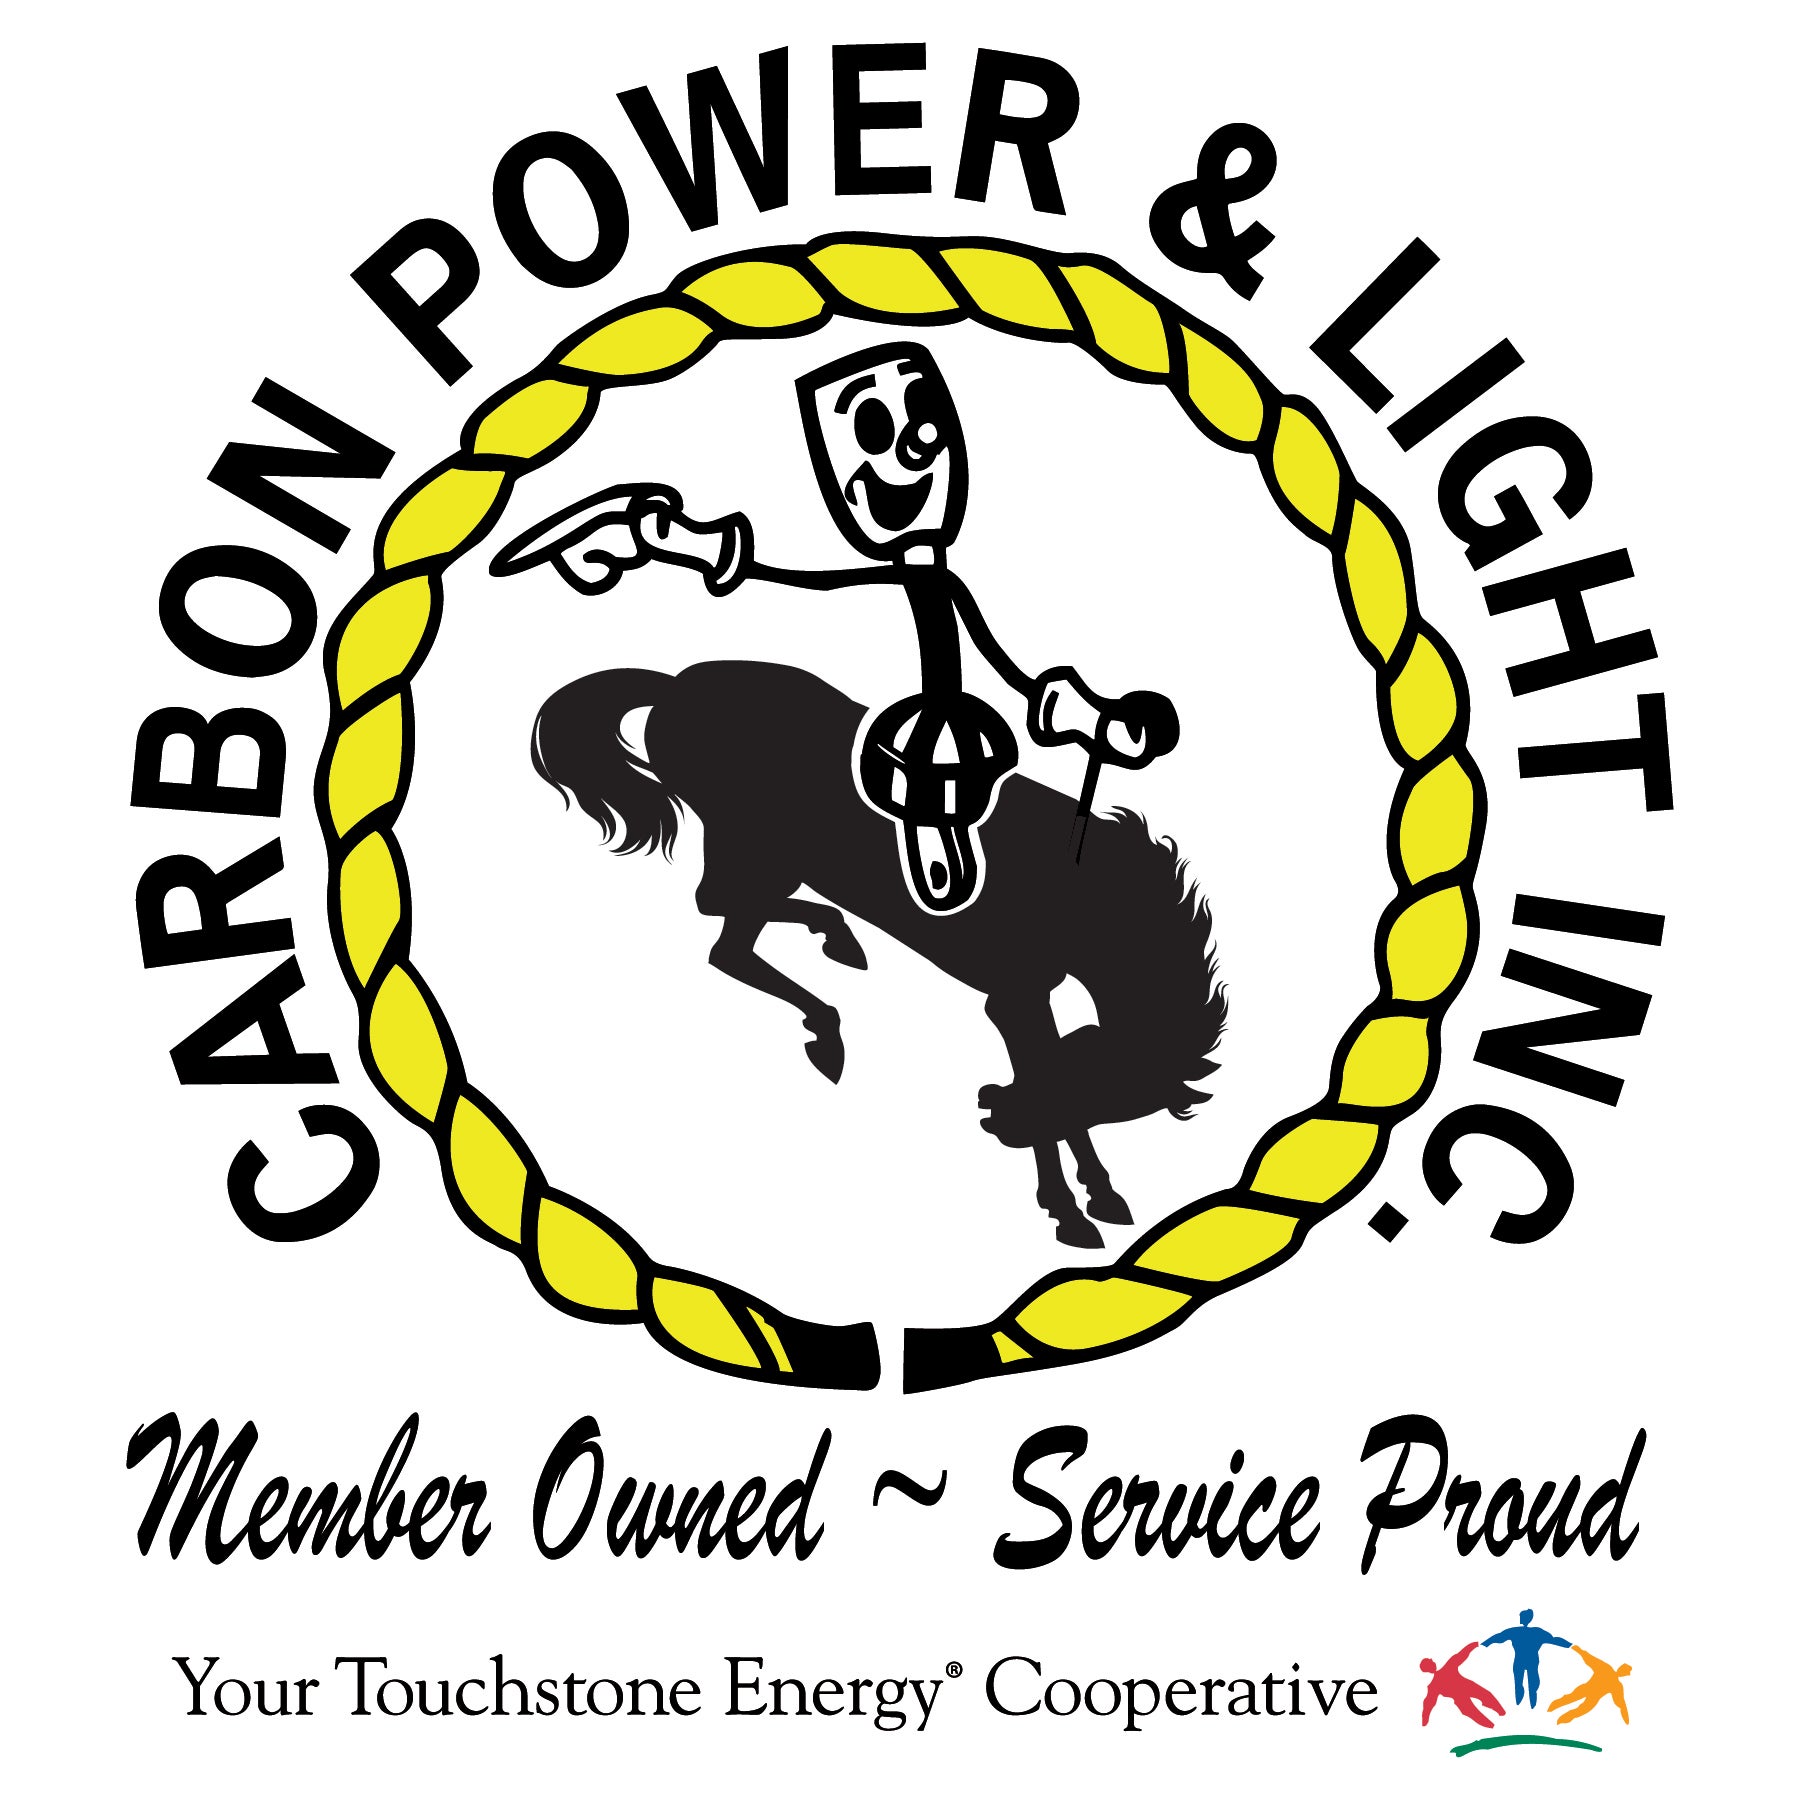 www.carbonpower.com